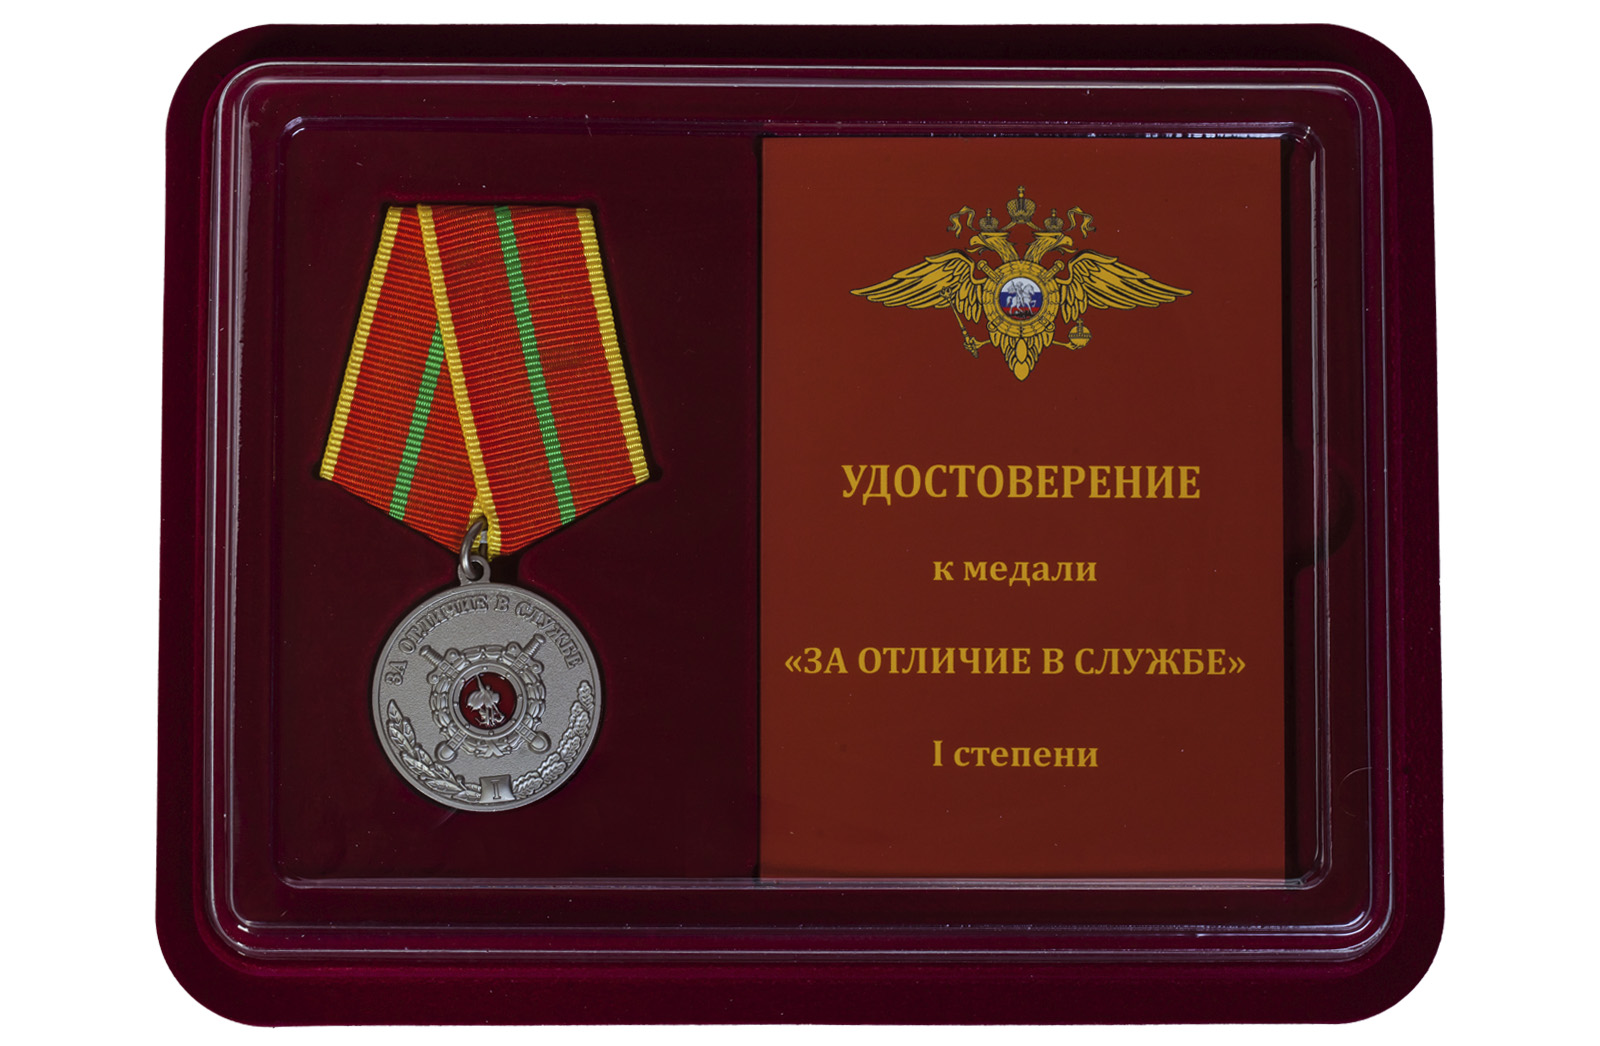 Купить медаль МВД России За отличие в службе 1 степени по низкой цене